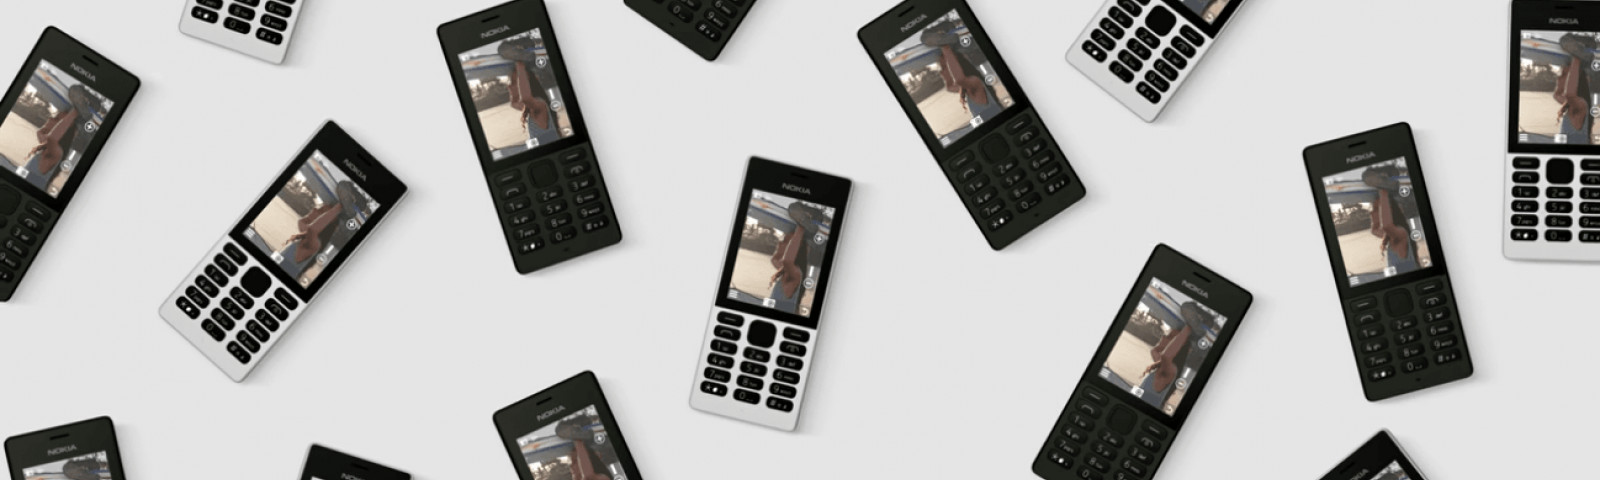 Nokia 150 espace réservé vidéo